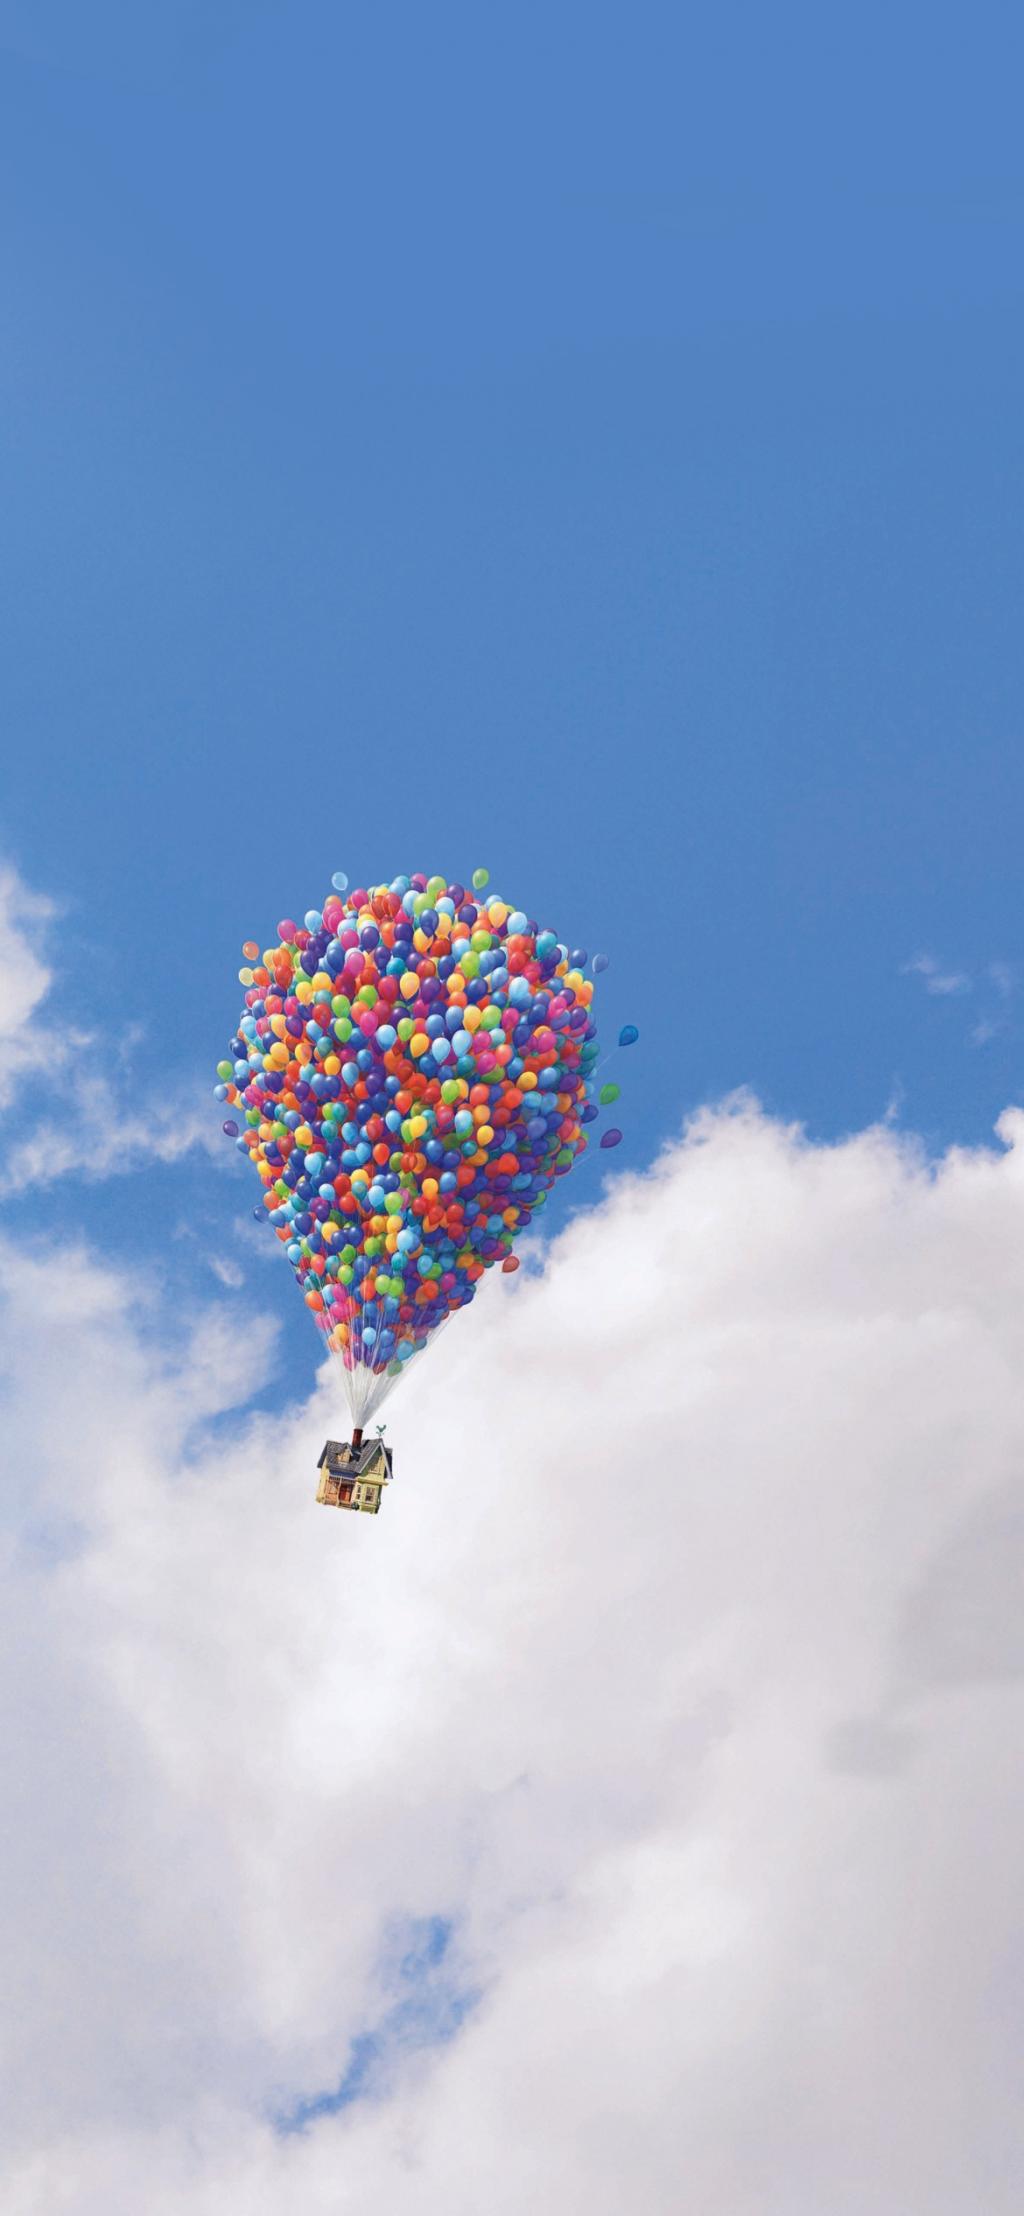 湛蓝天空上的气球飞屋